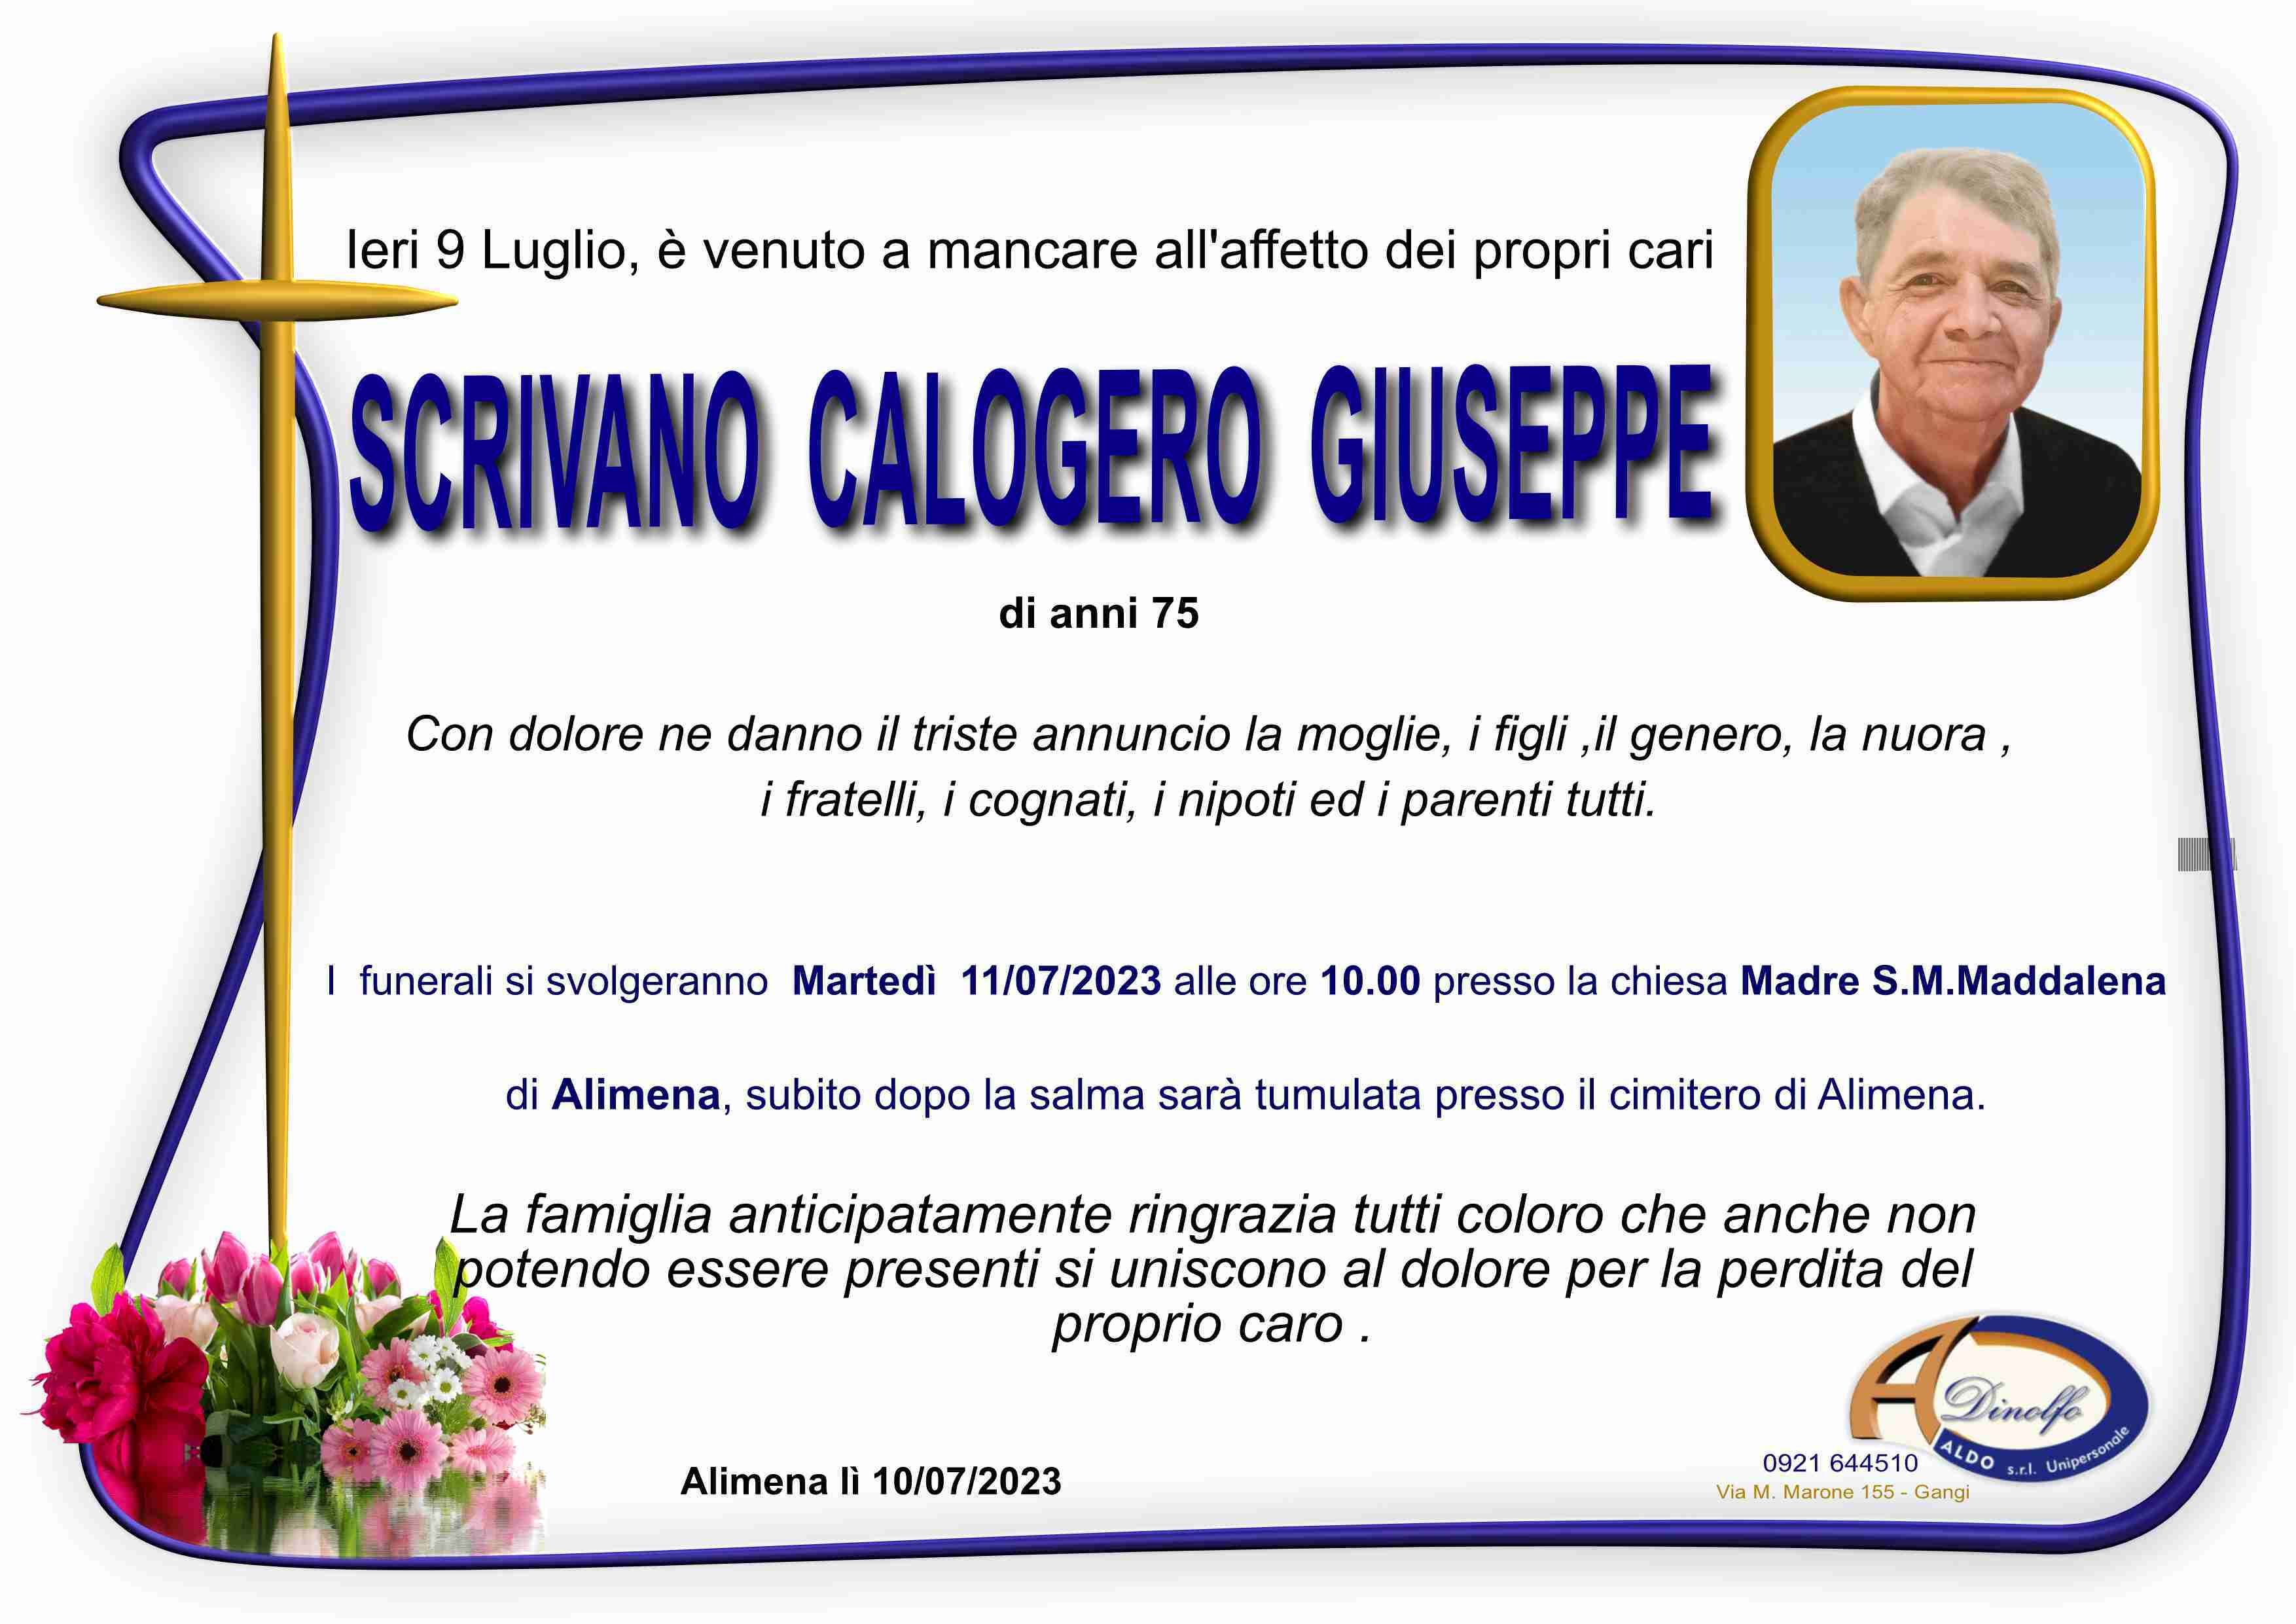 Calogero Giuseppe Scrivano